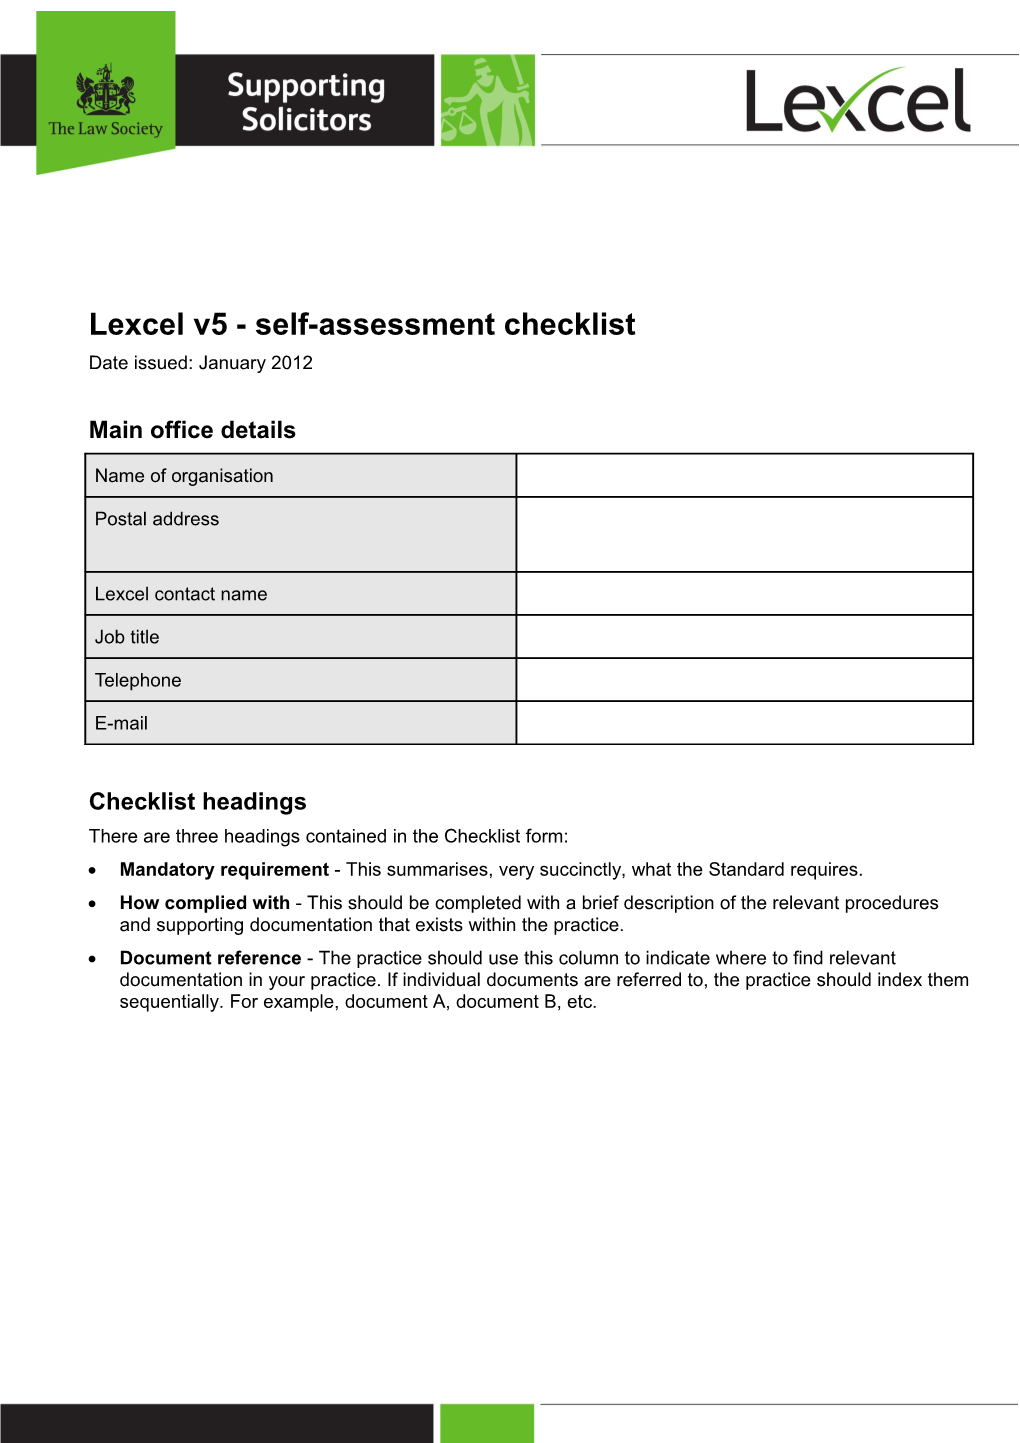 Lexcel V5 - Self-Assessment Checklist